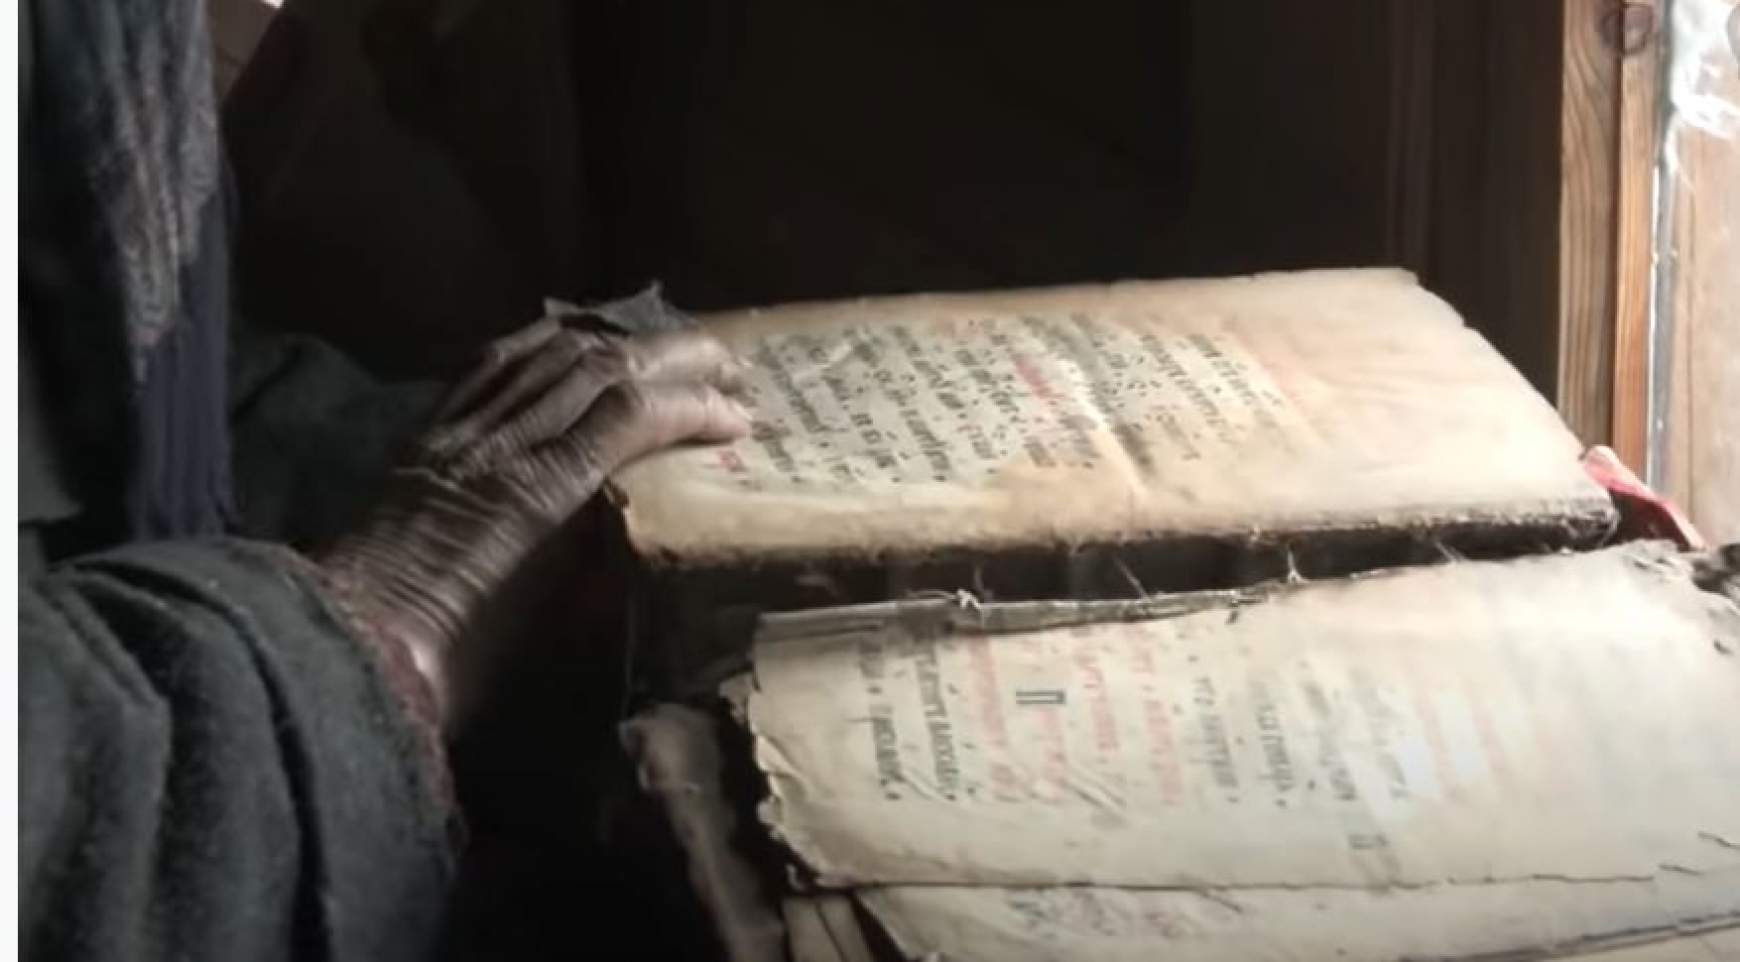 Agafya 400 éves Bibliája